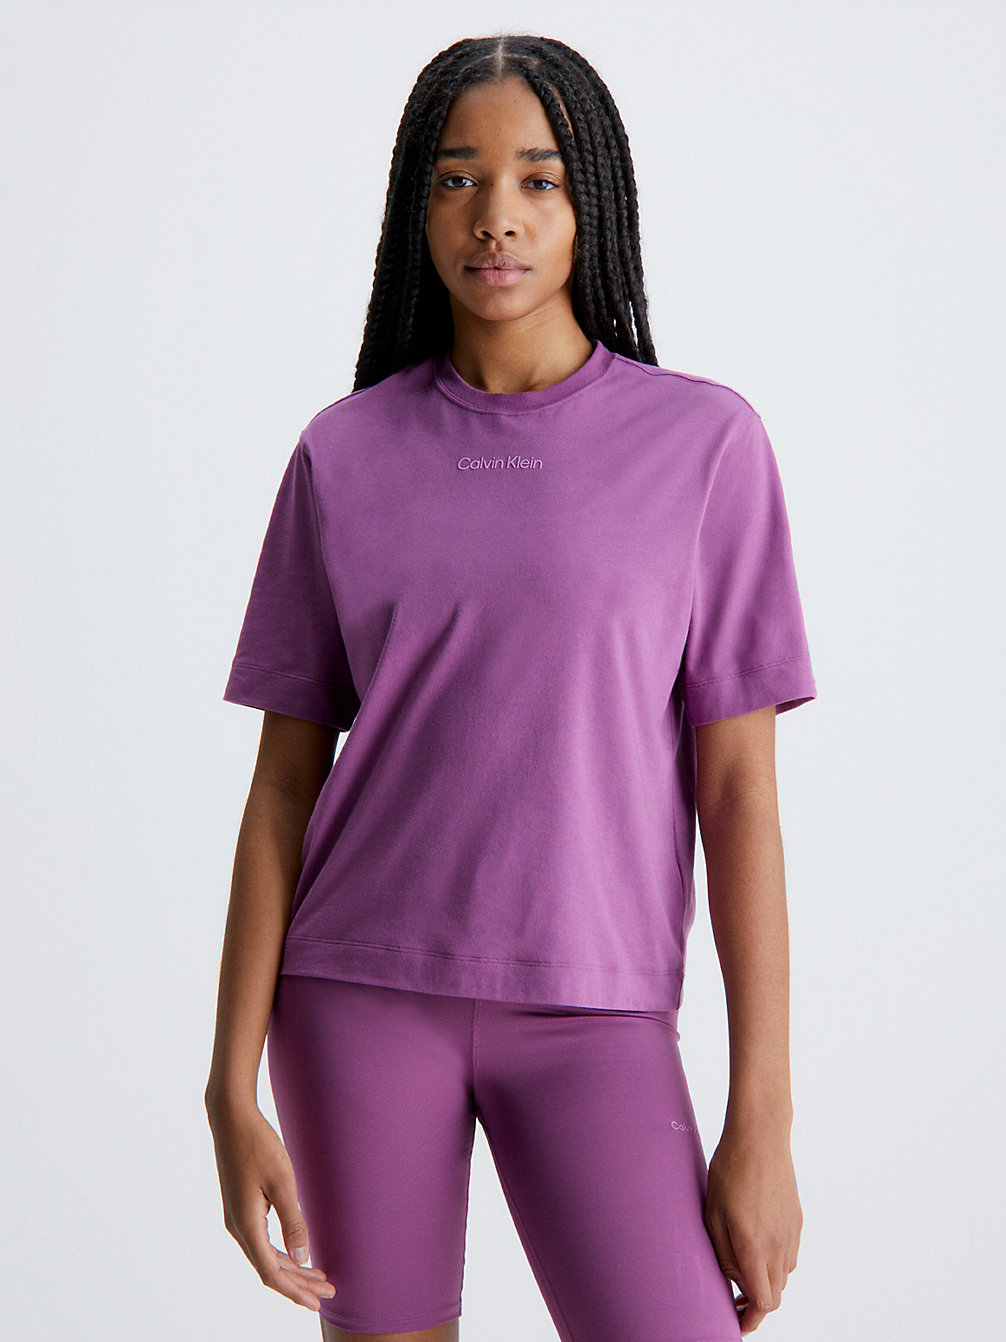 AMETHYST > T-Shirt Sportowy > undefined Kobiety - Calvin Klein